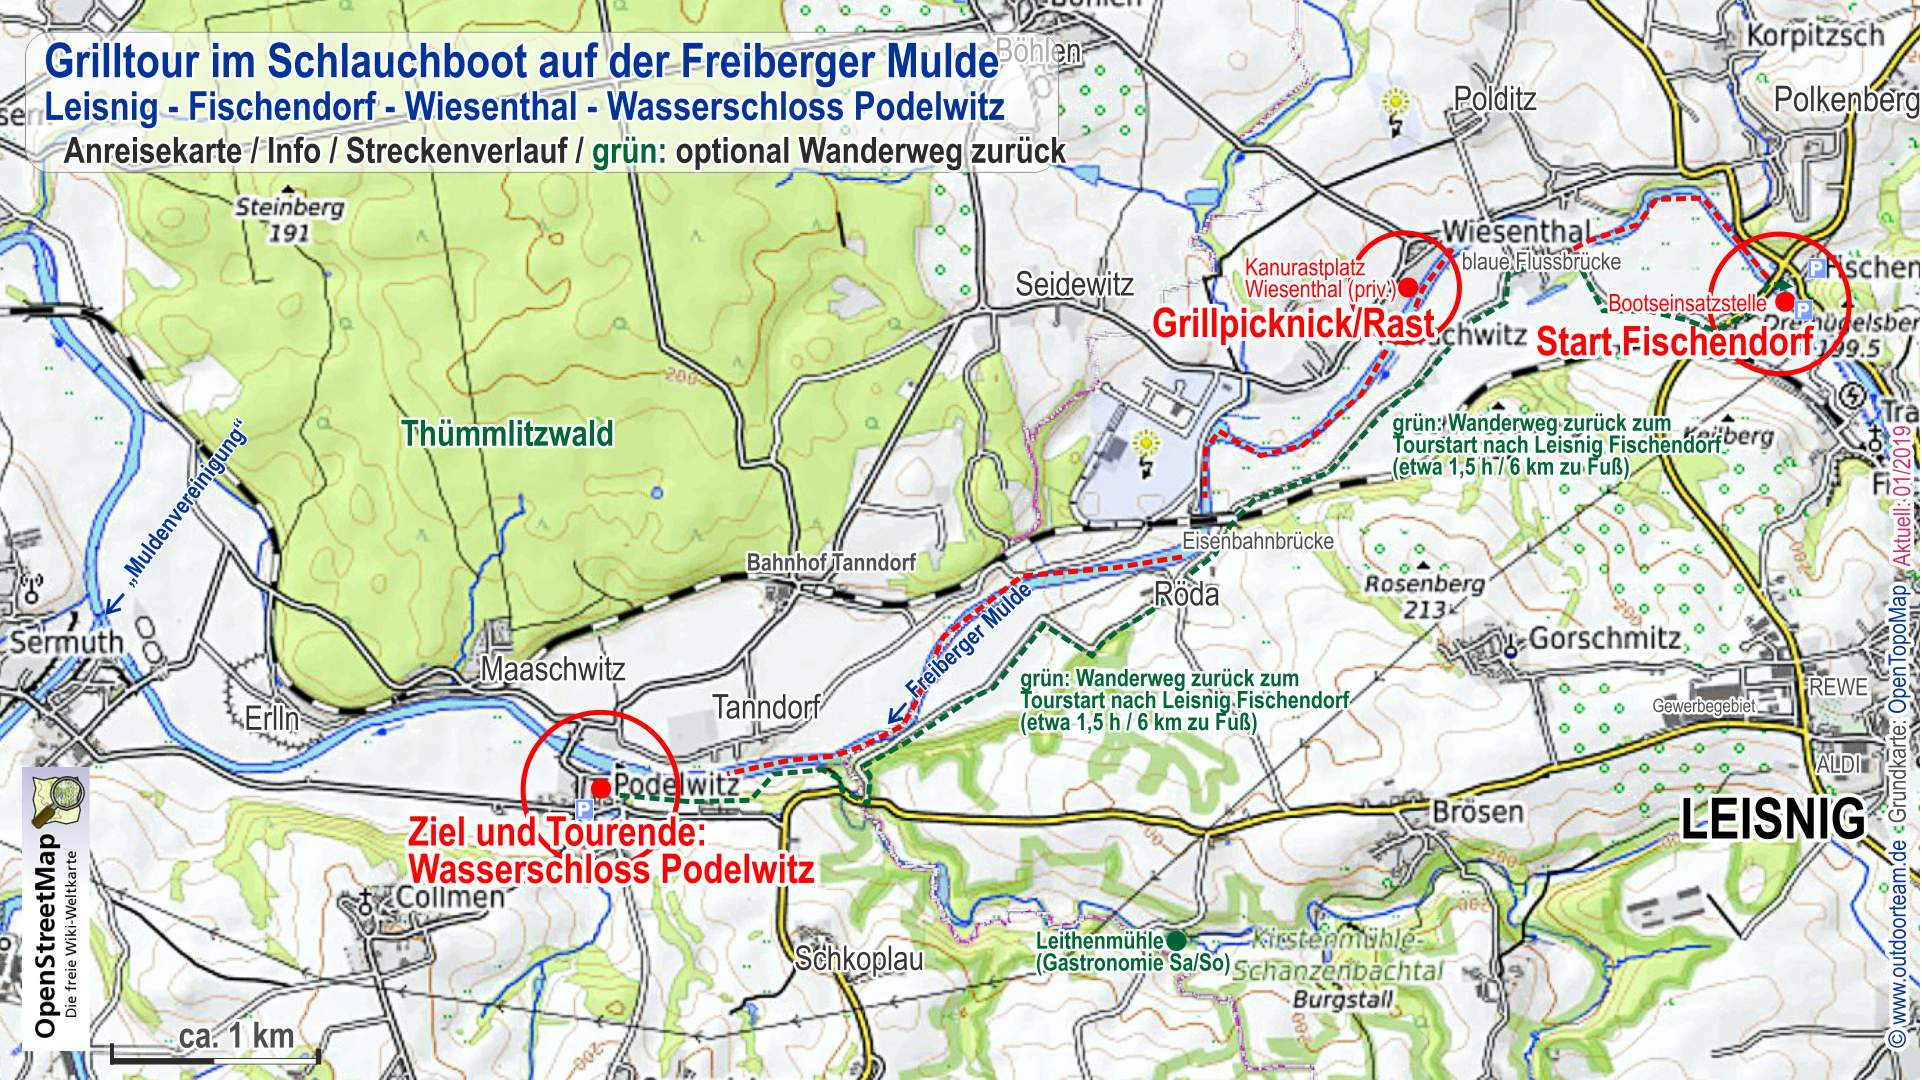 Detailkarte vom Streckenverlauf Grilltour Mulde (rot). Grün markiert ist der Rückweg als Wanderung entlang des Muldental-Radweges zum Ausgangspunkt Leisnig Fischendorf.